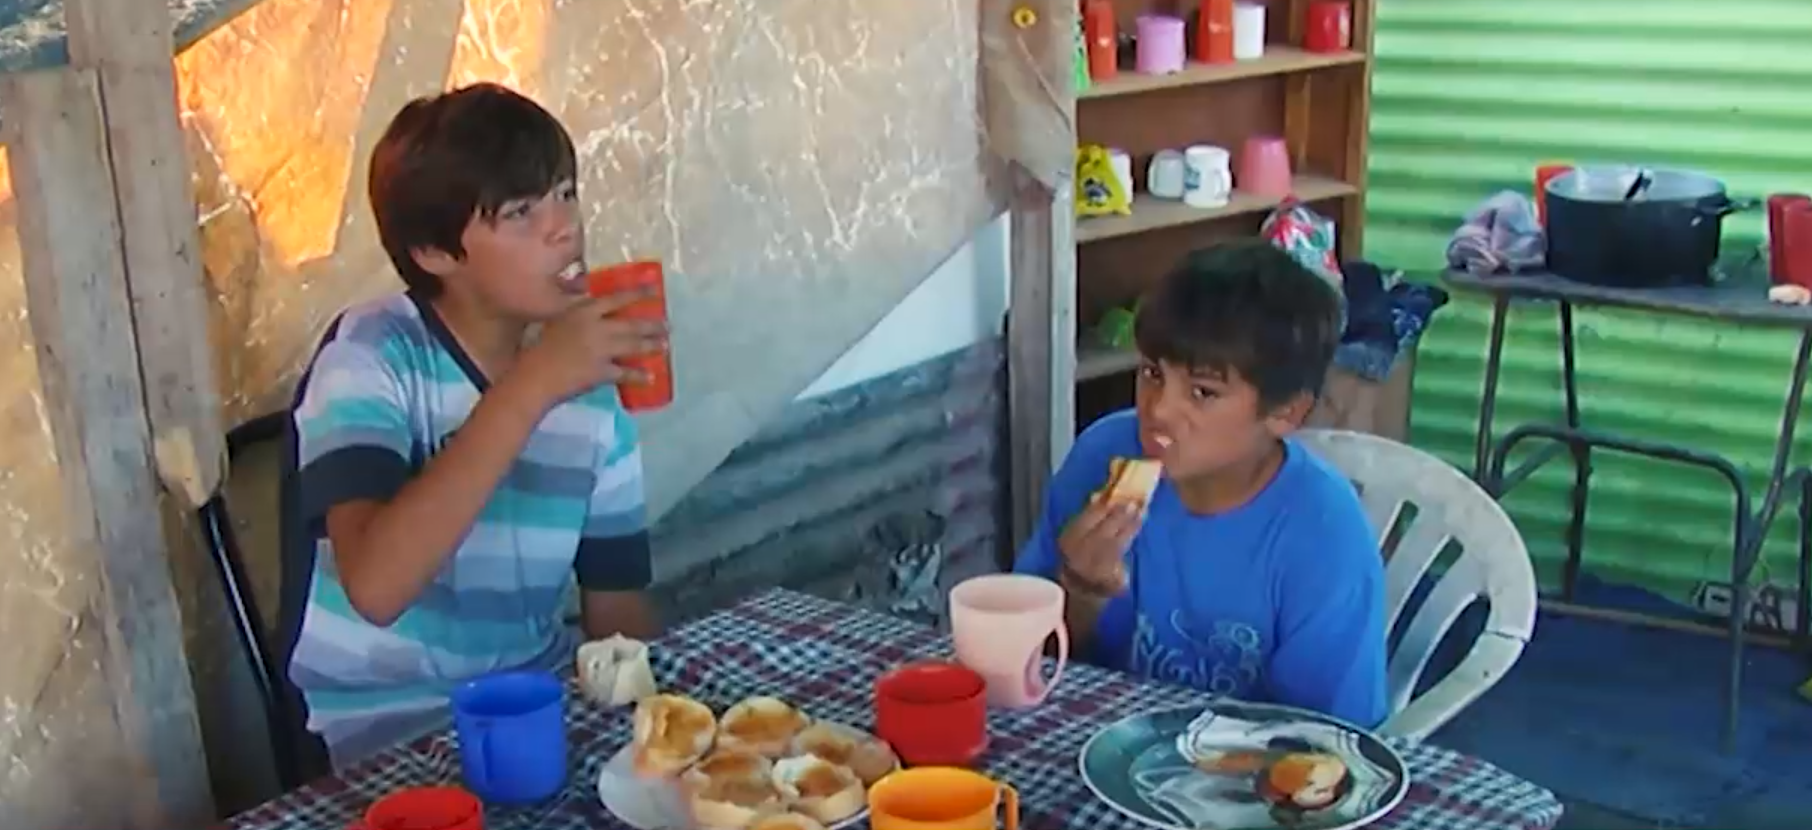 Niños comparten comida en el merendero. Fuente: Telefe Noticias